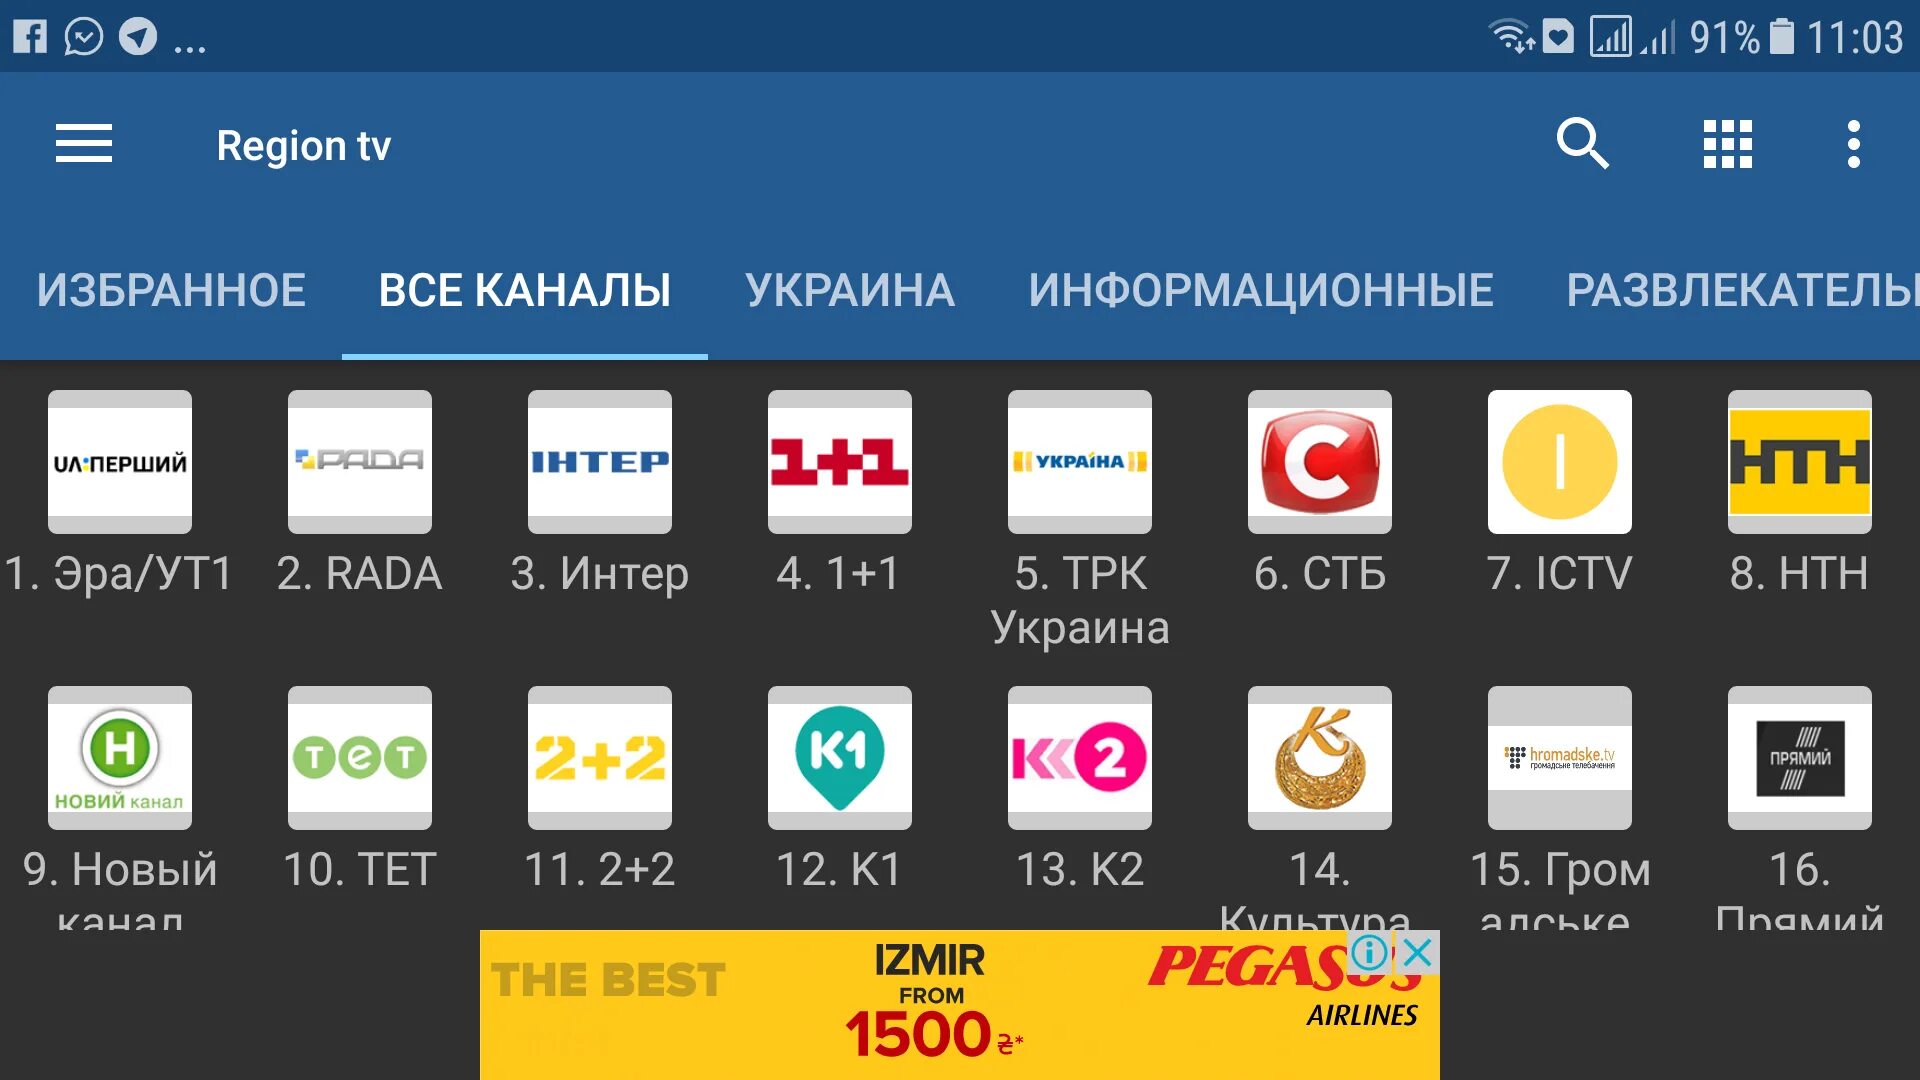 Адрес плейлиста iptv для андроид. IPTV плейлист. IPTV Украина. Список украинских телеканалов.